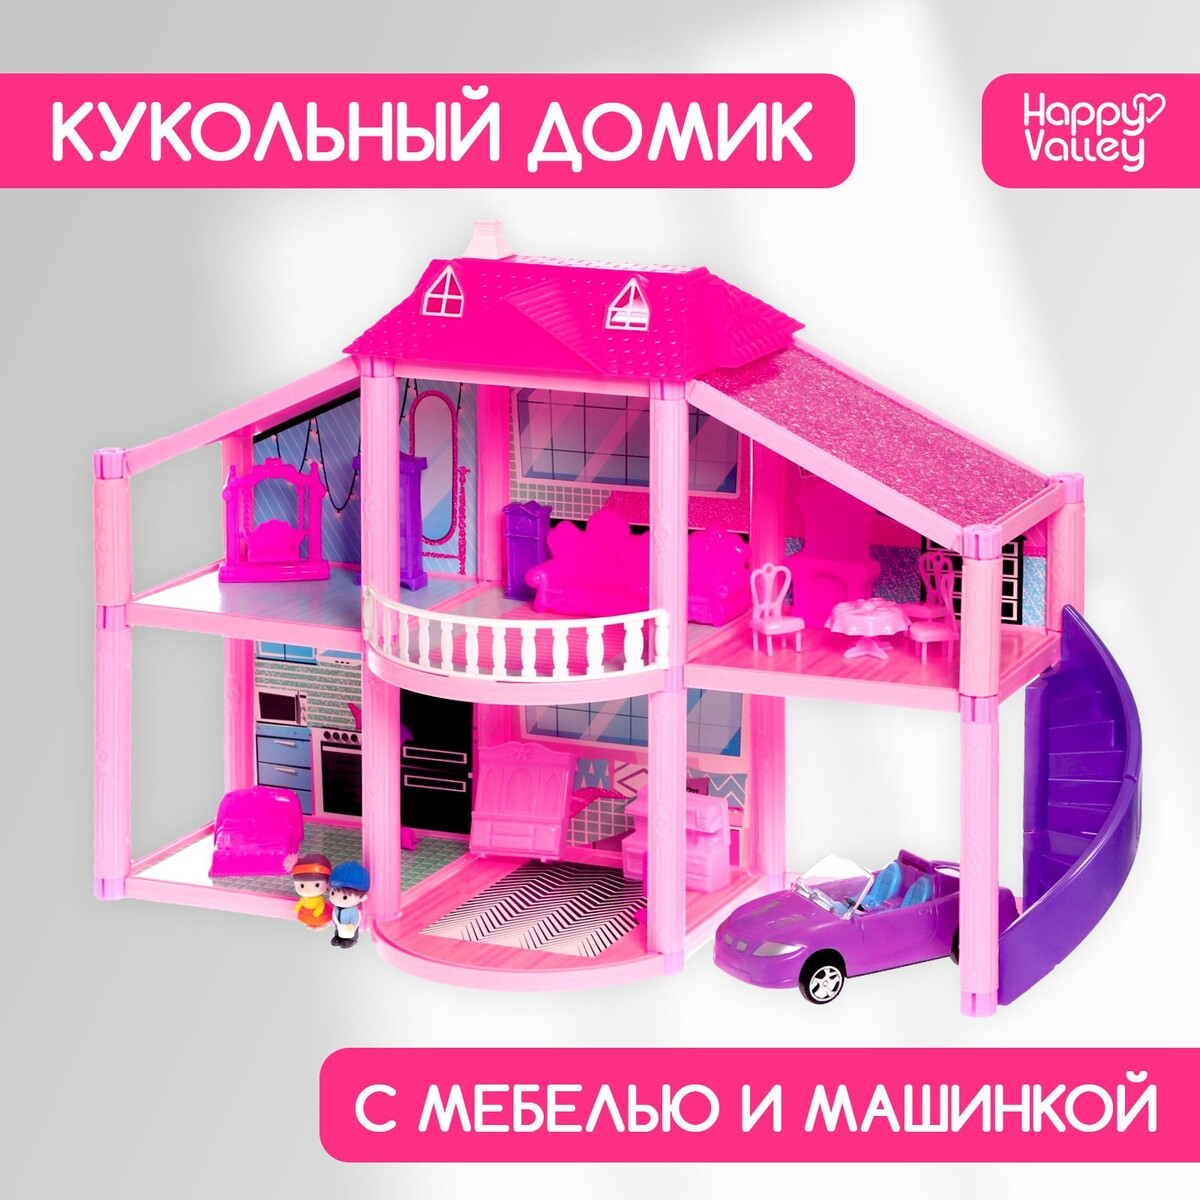 Дом для кукол Happy Valley 0498815: купить за 4640 руб в интернет магазинес бесплатной доставкой